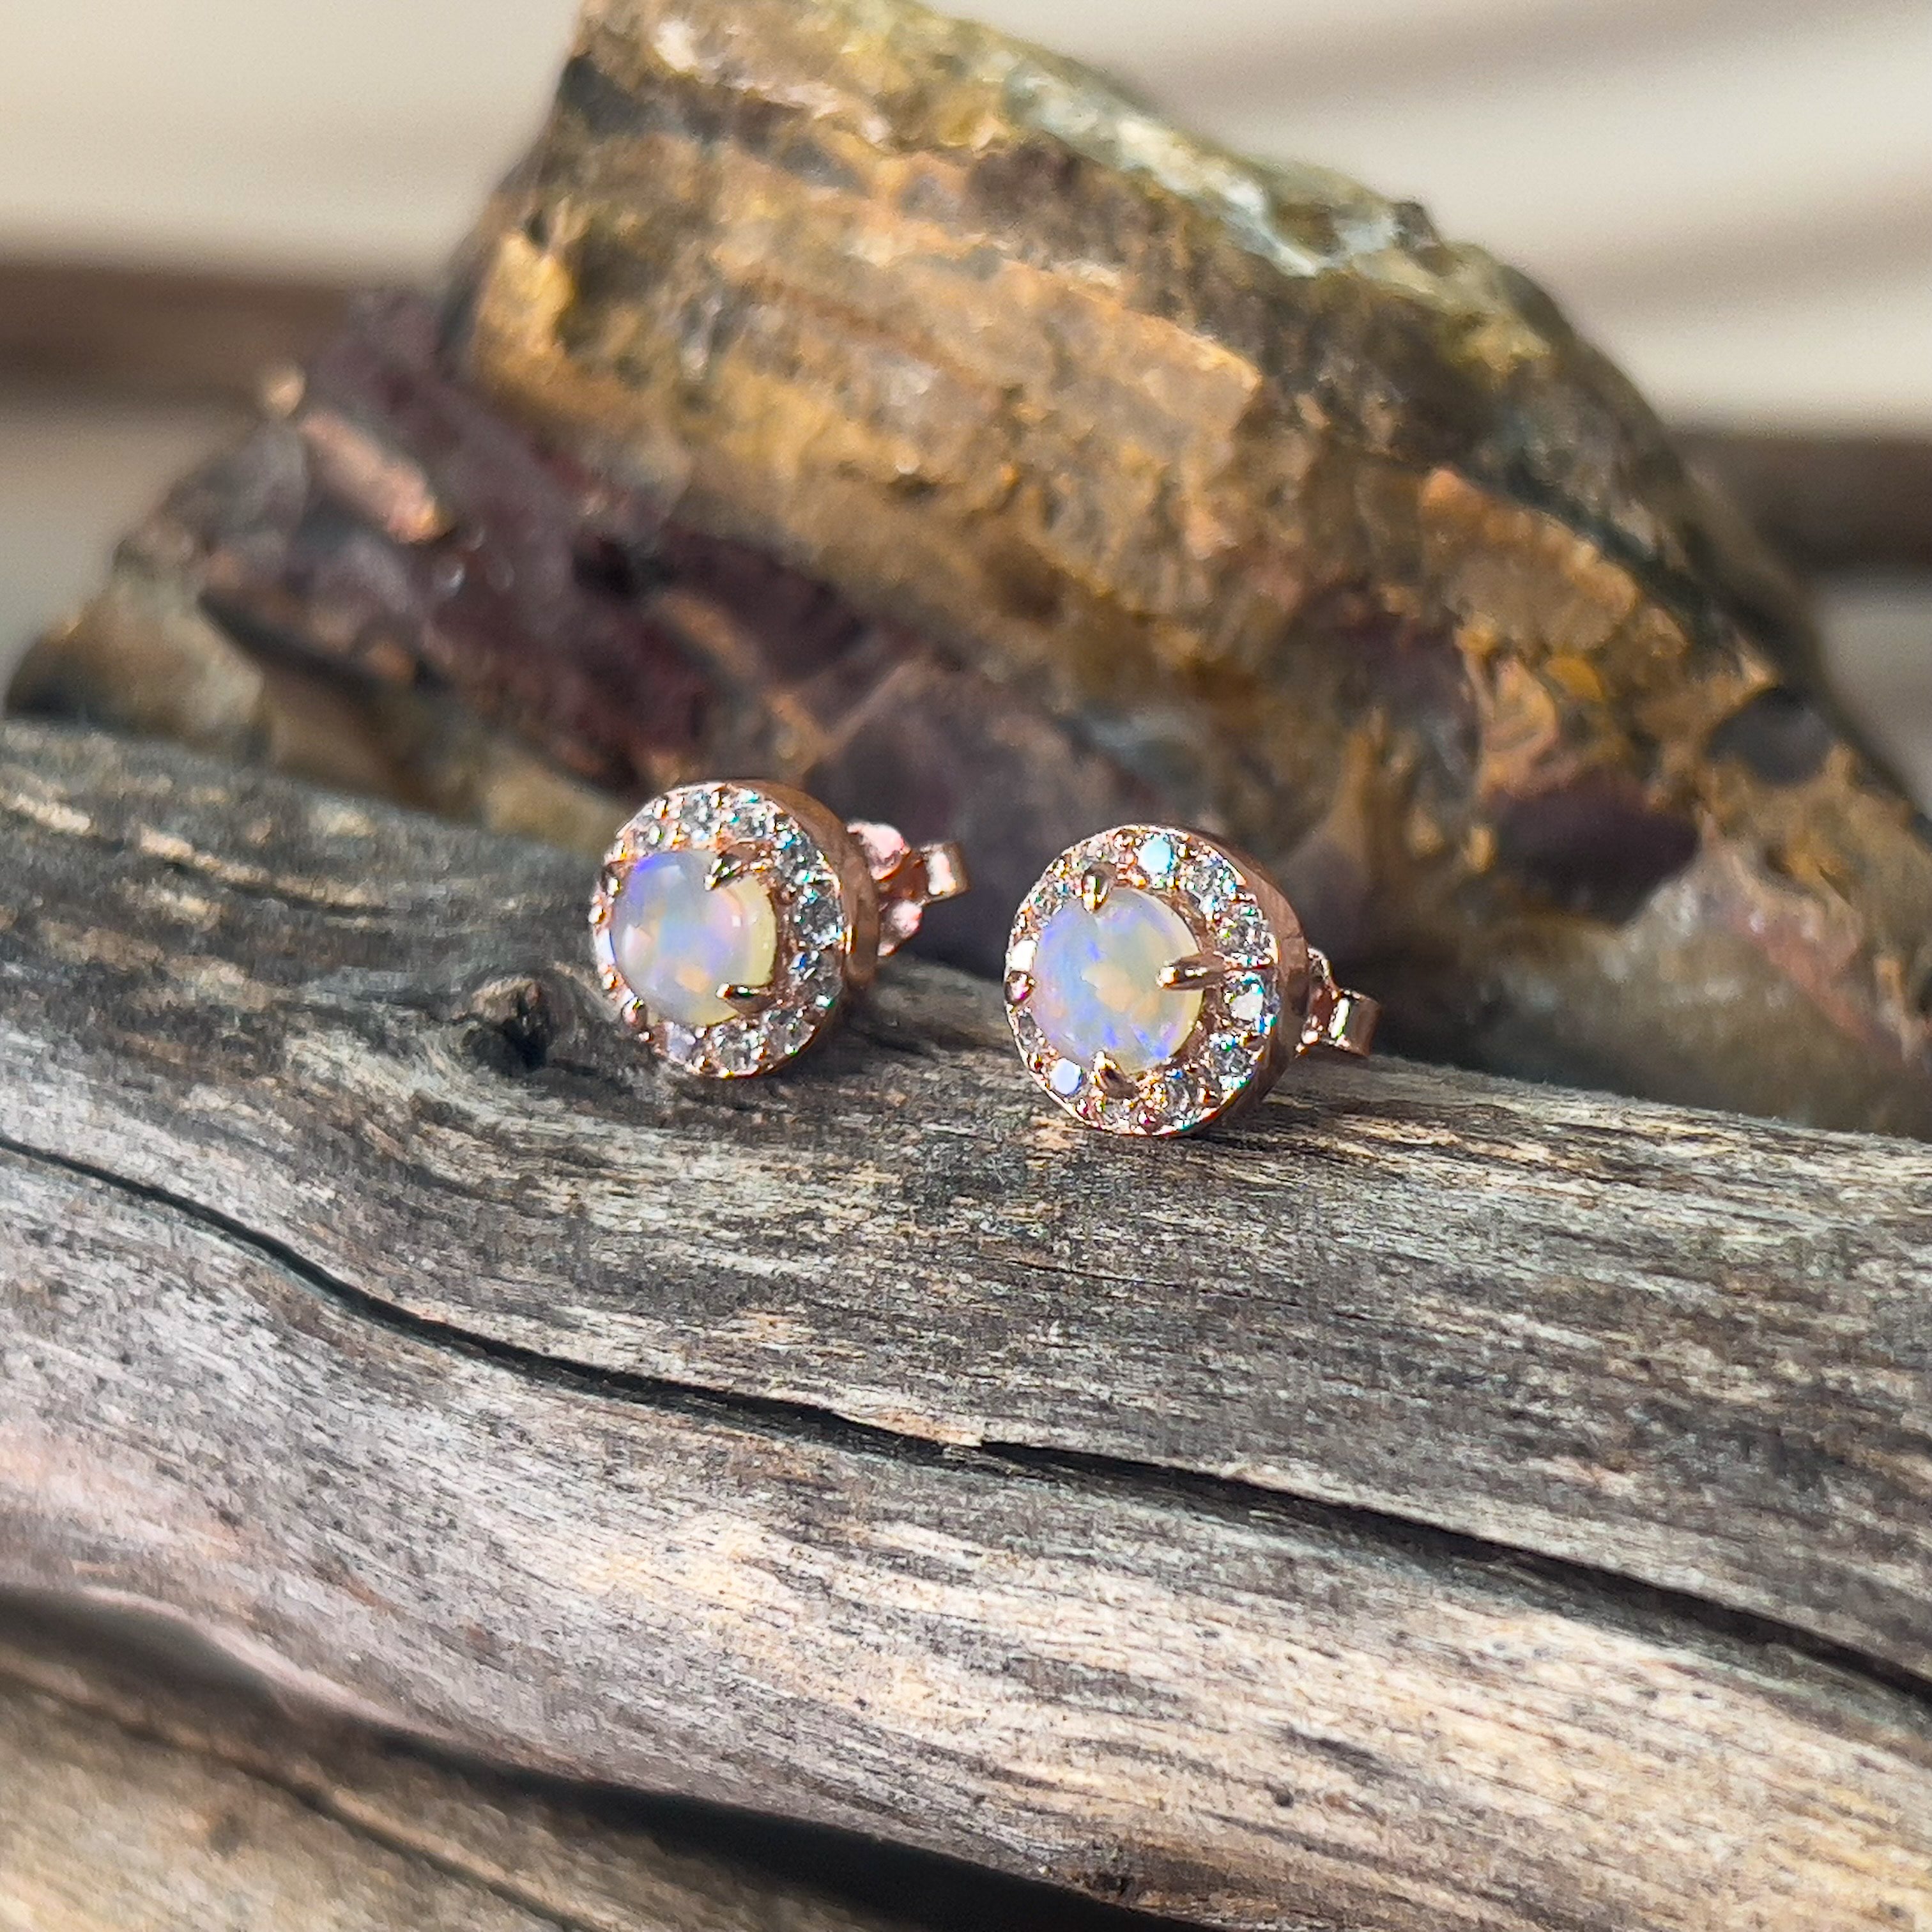 Rose Gold plated Sterling Silver 5mm Light Opal halo stud earrings - Masterpiece Jewellery Opal & Gems Sydney Australia | Online Shop